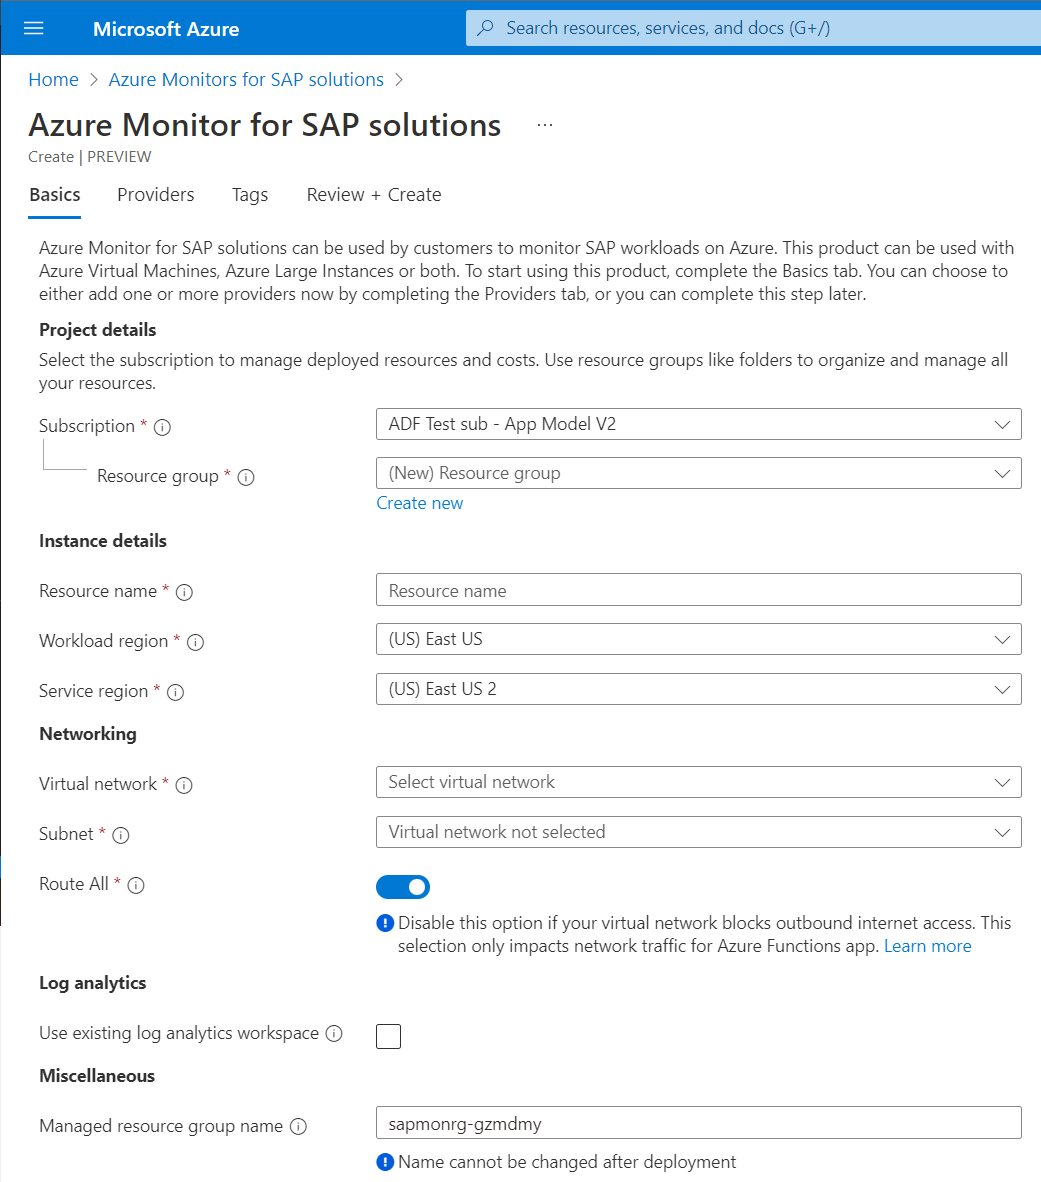 Captura de tela que mostra detalhes básicos de uma instância do Azure Monitor para soluções SAP.